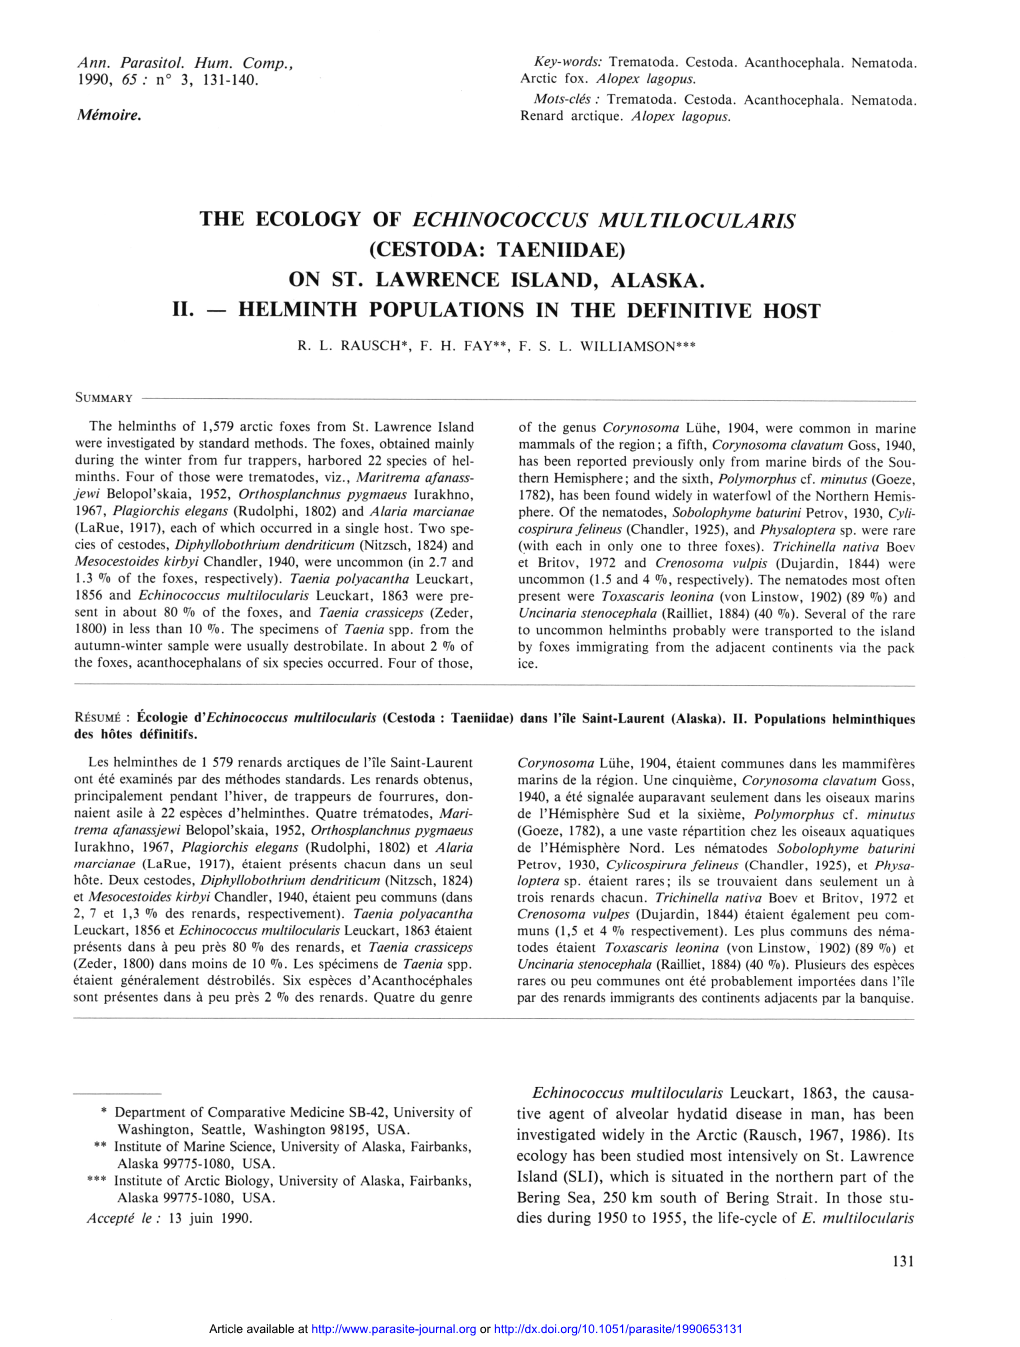 The Ecology of Echinococcus Multilocularis (Cestoda : Taeniidae)